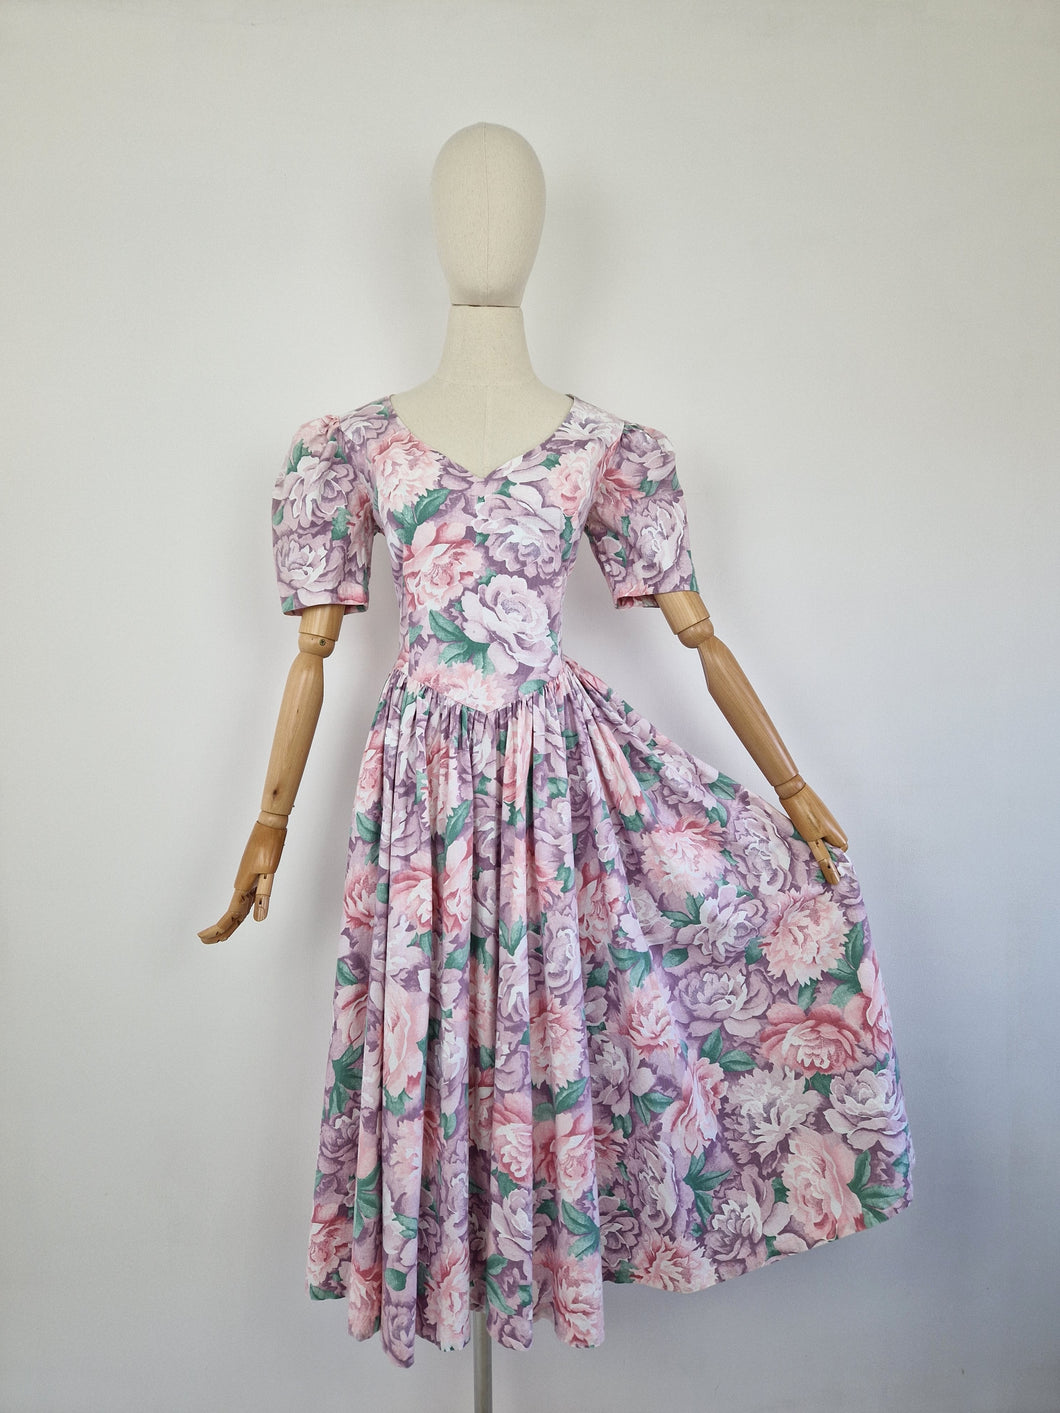 Vintage pastel ballgown dress